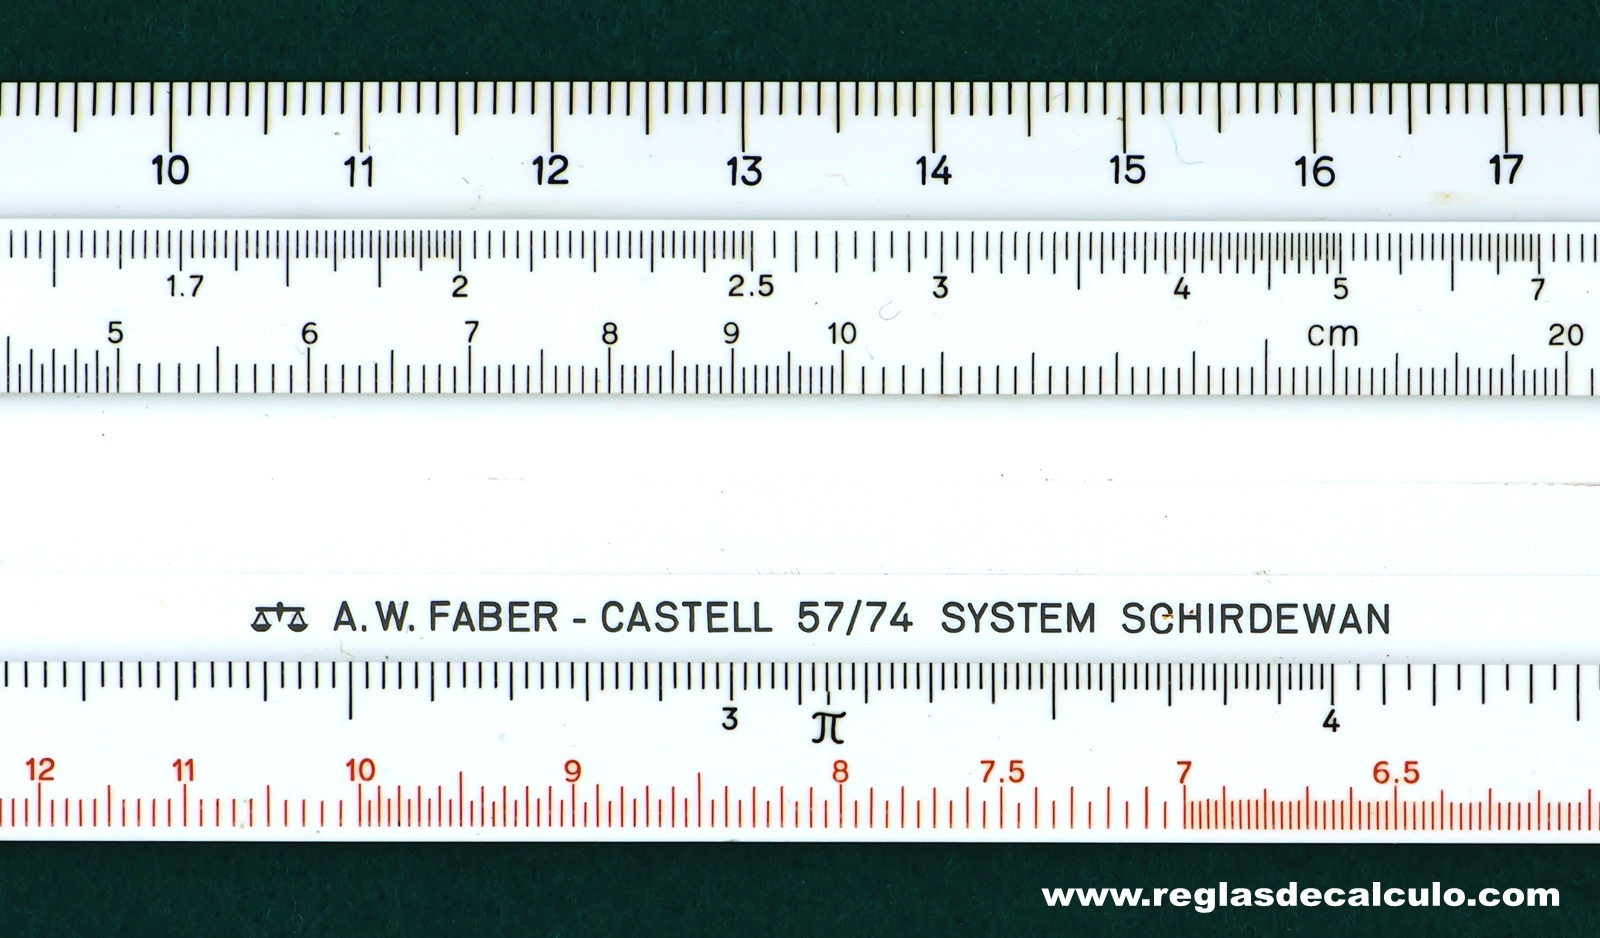 Regla de Calculo Slide rule Faber Castell 52/91